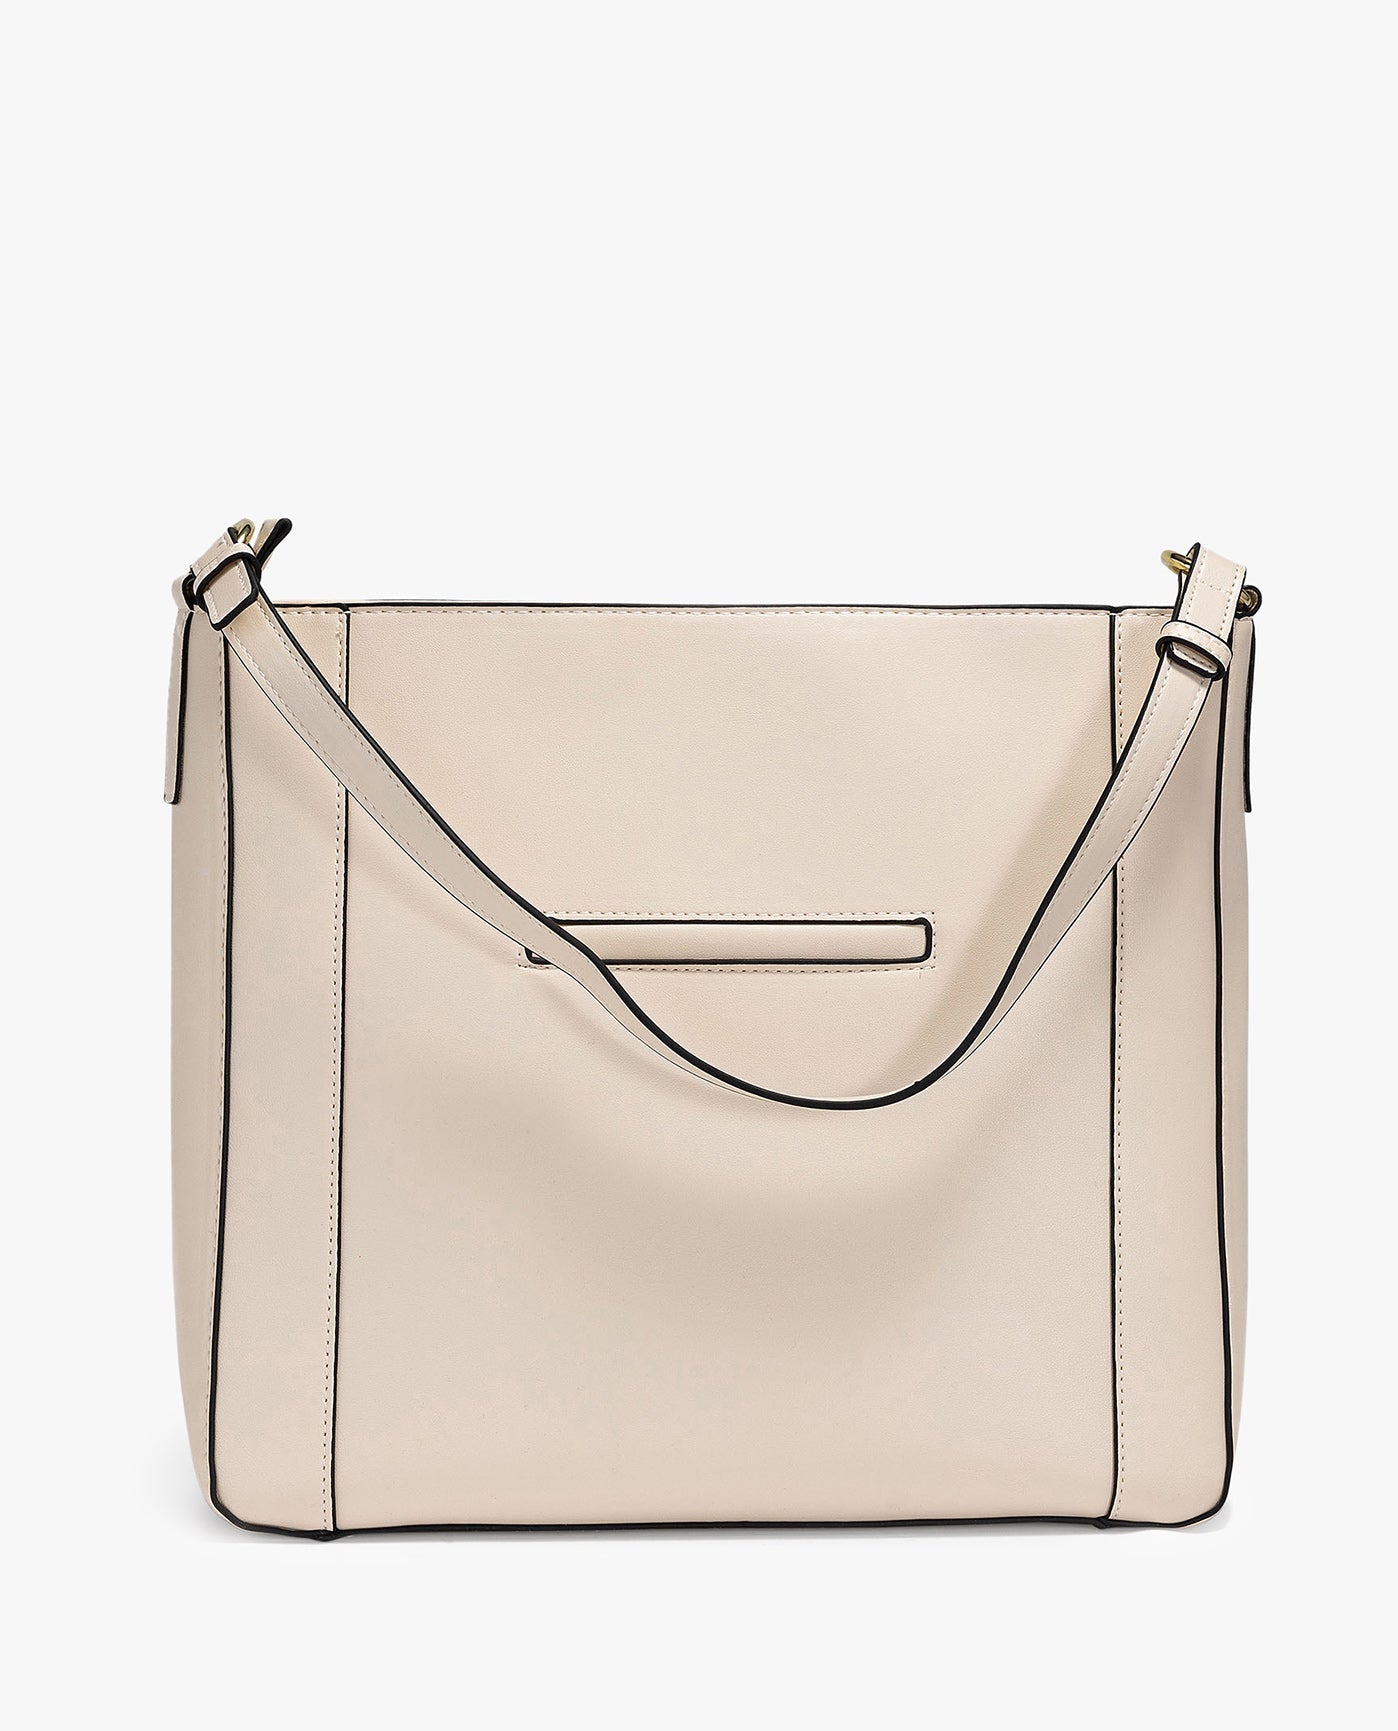 MANDARINA DUCK shoulder bag Velvet Plisse Hobo London Fog | Buy bags, purses  & accessories online | modeherz